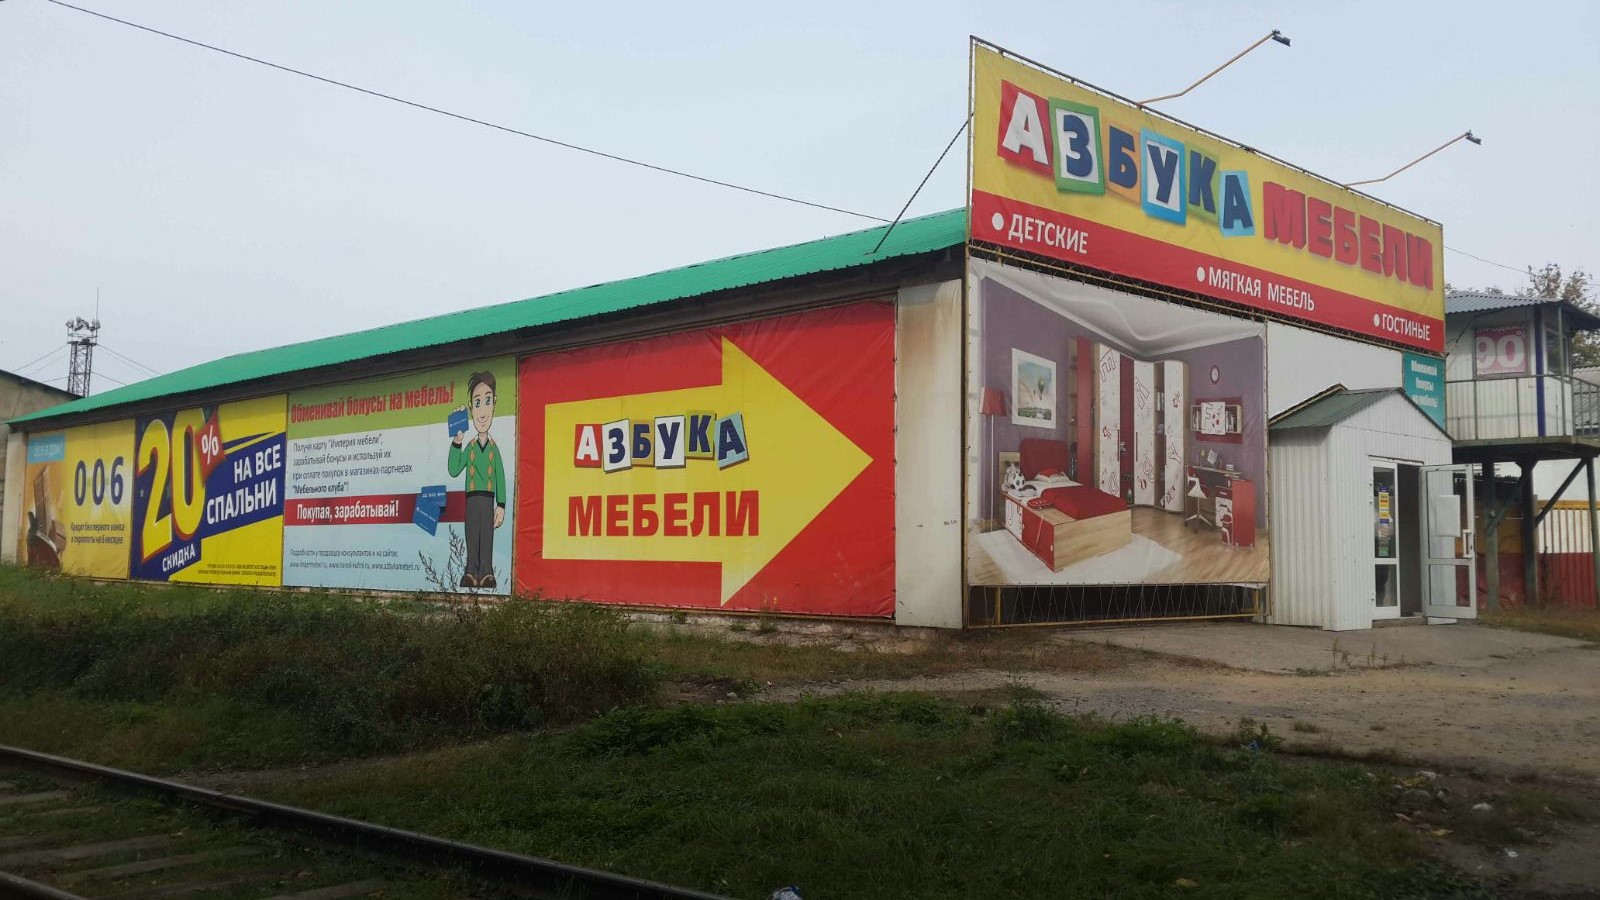 Яндекс Маркет Интернет Магазин Биробиджан